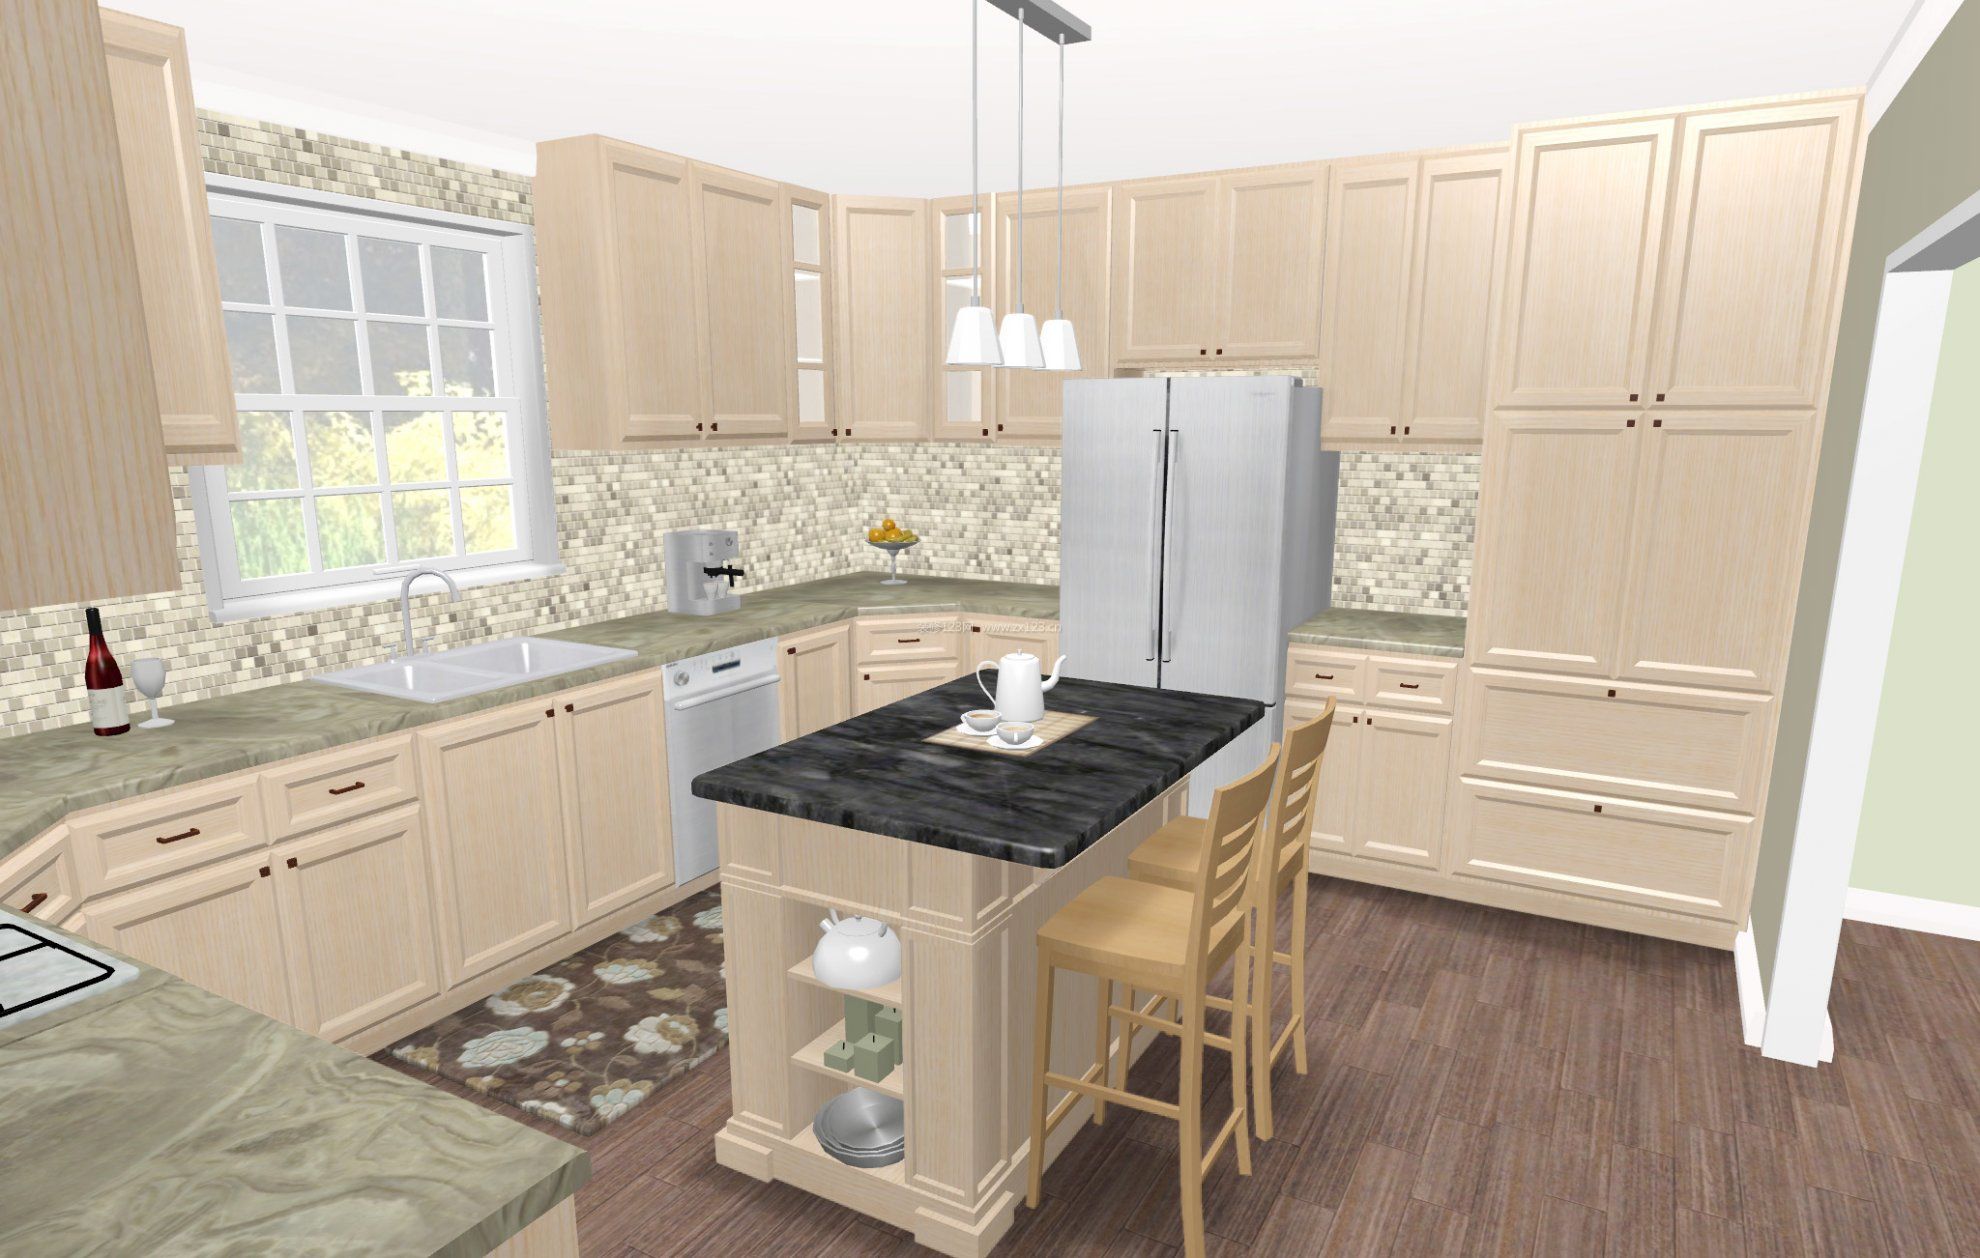 一层小别墅设计现代简约厨房风格